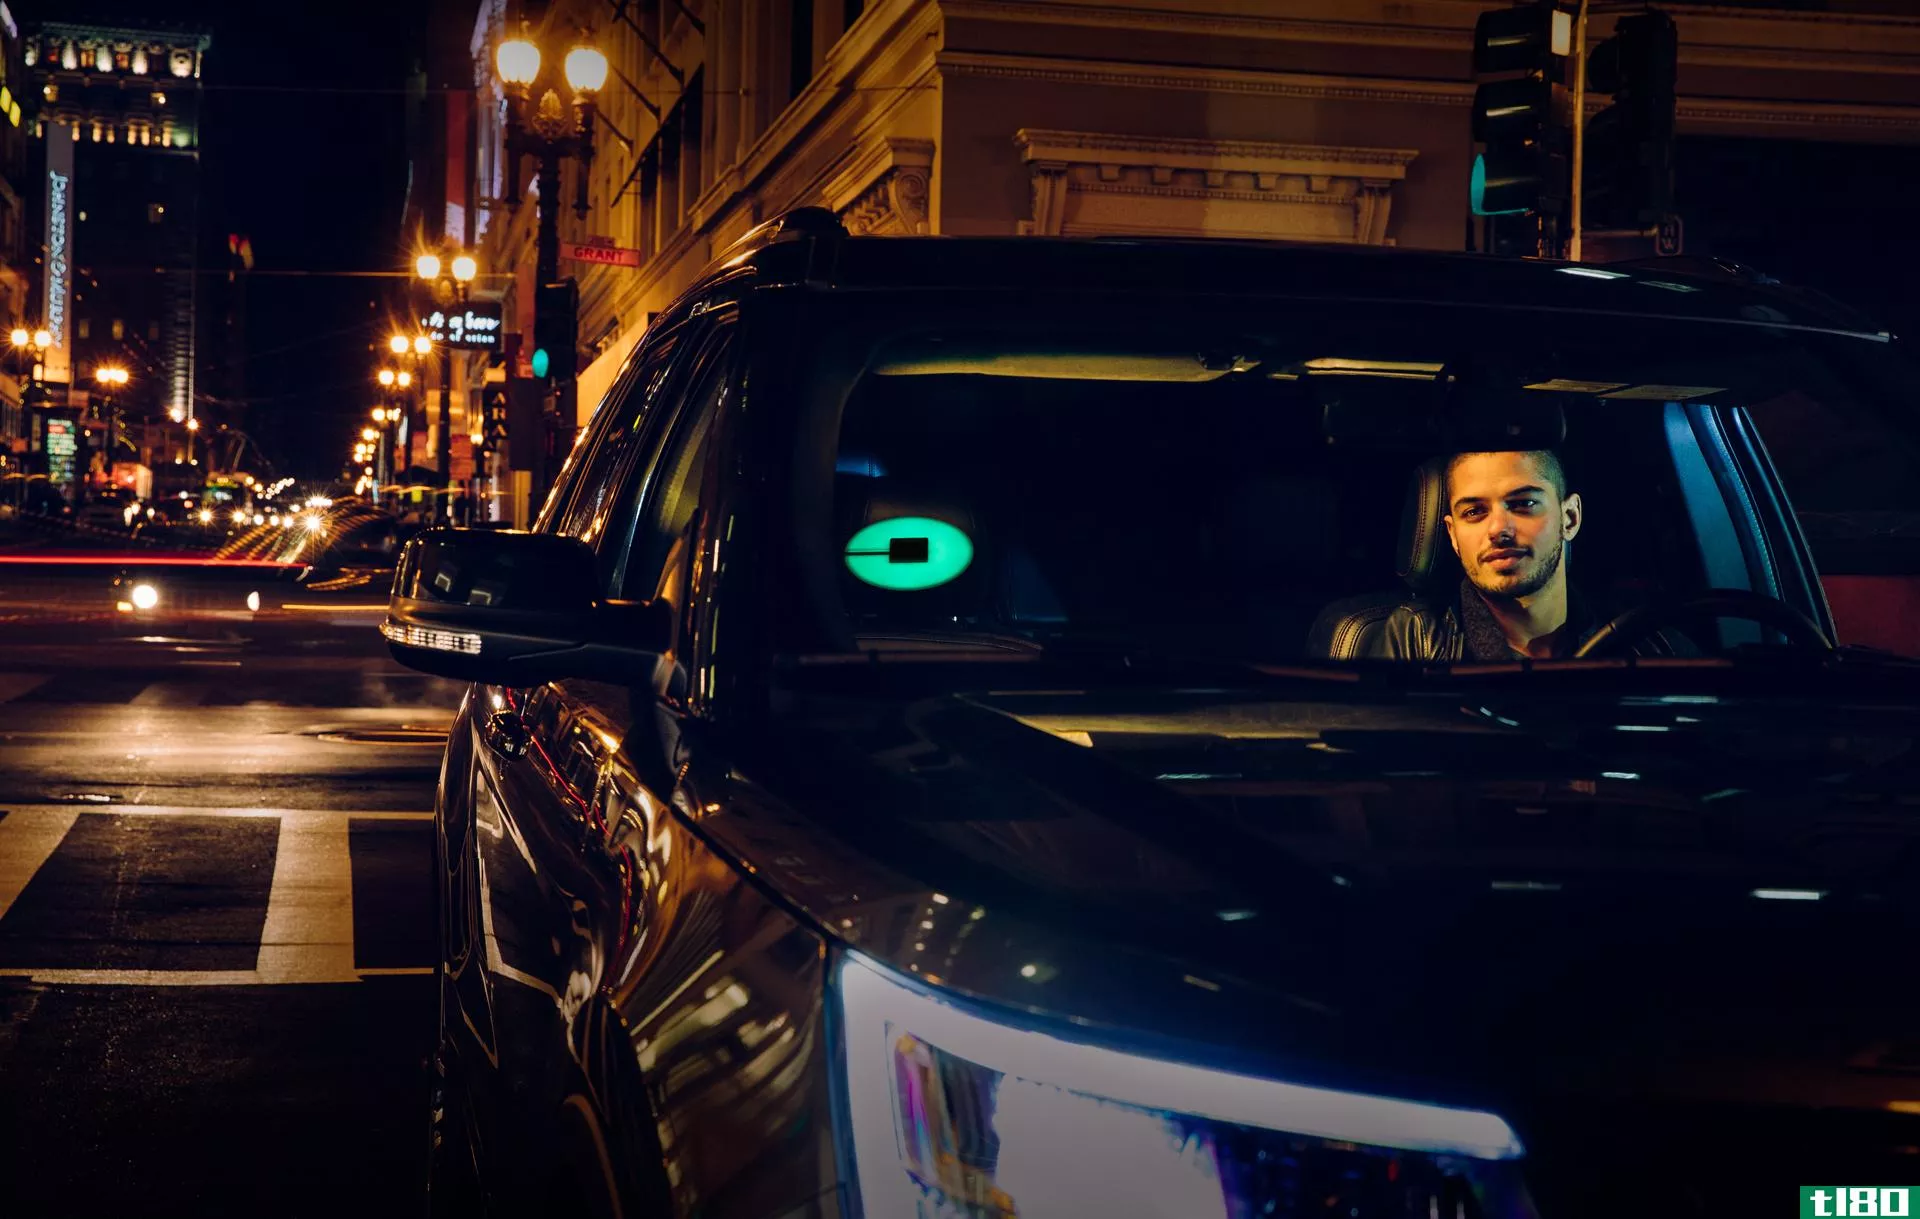 认识一下beacon吧，uber丰富多彩的新玩意儿可以帮助你避免那些尴尬的汽车混乱